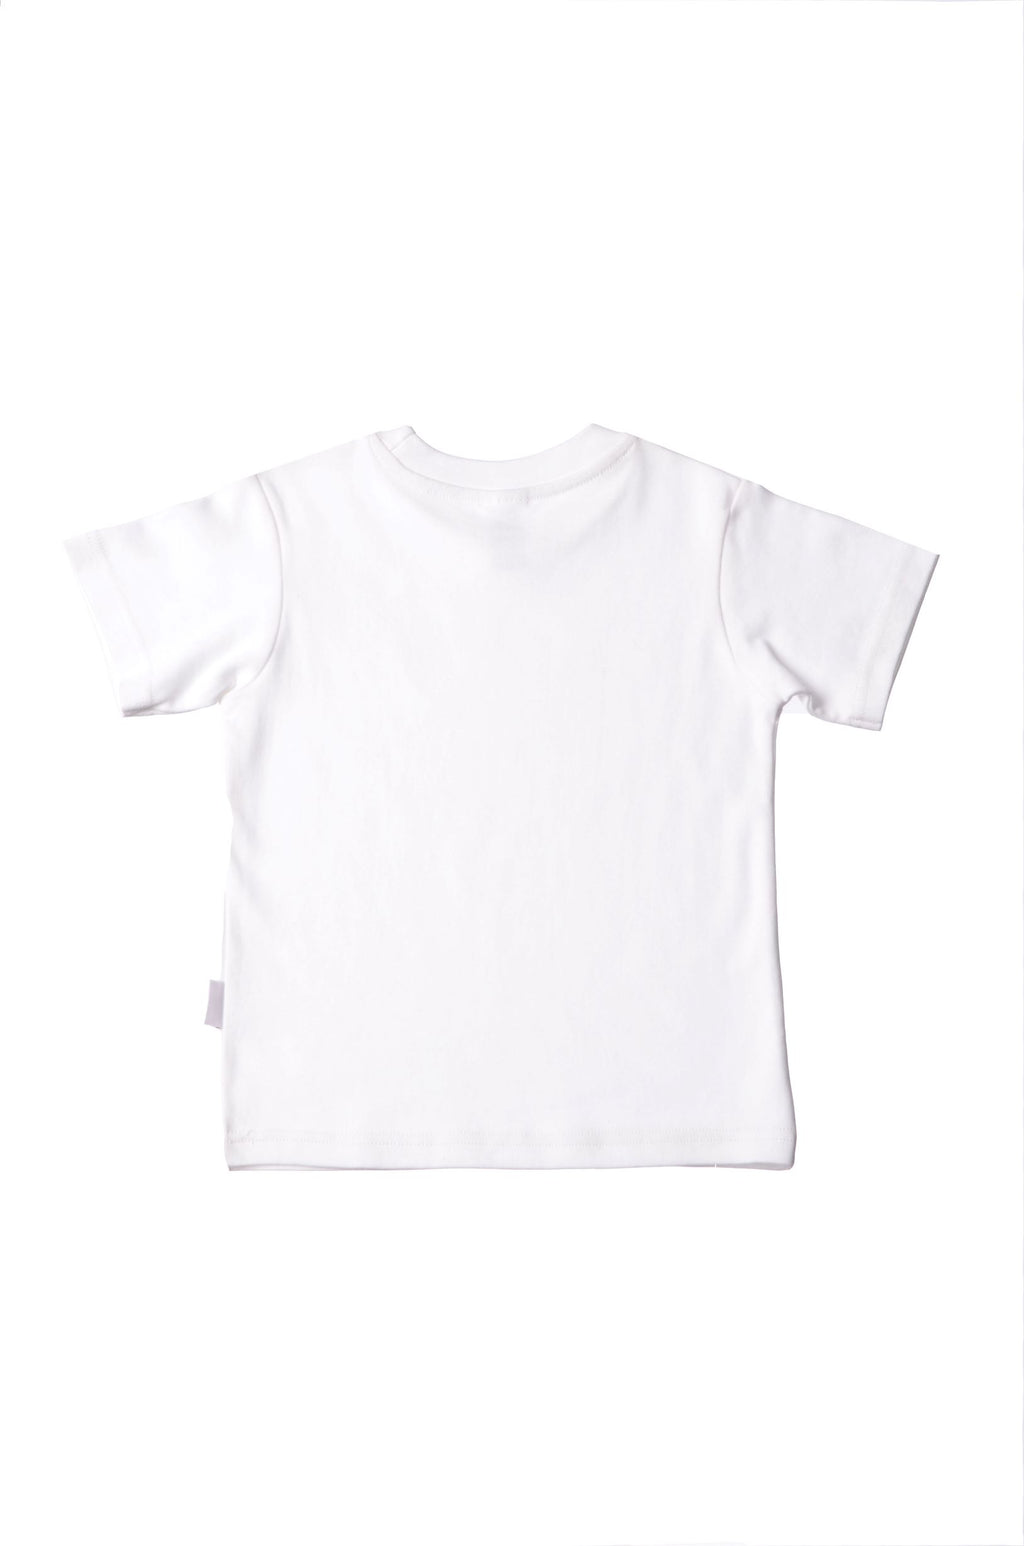 weißes T-Shirt aus Bio-Baumwolle mit buntem Wording "Moin"